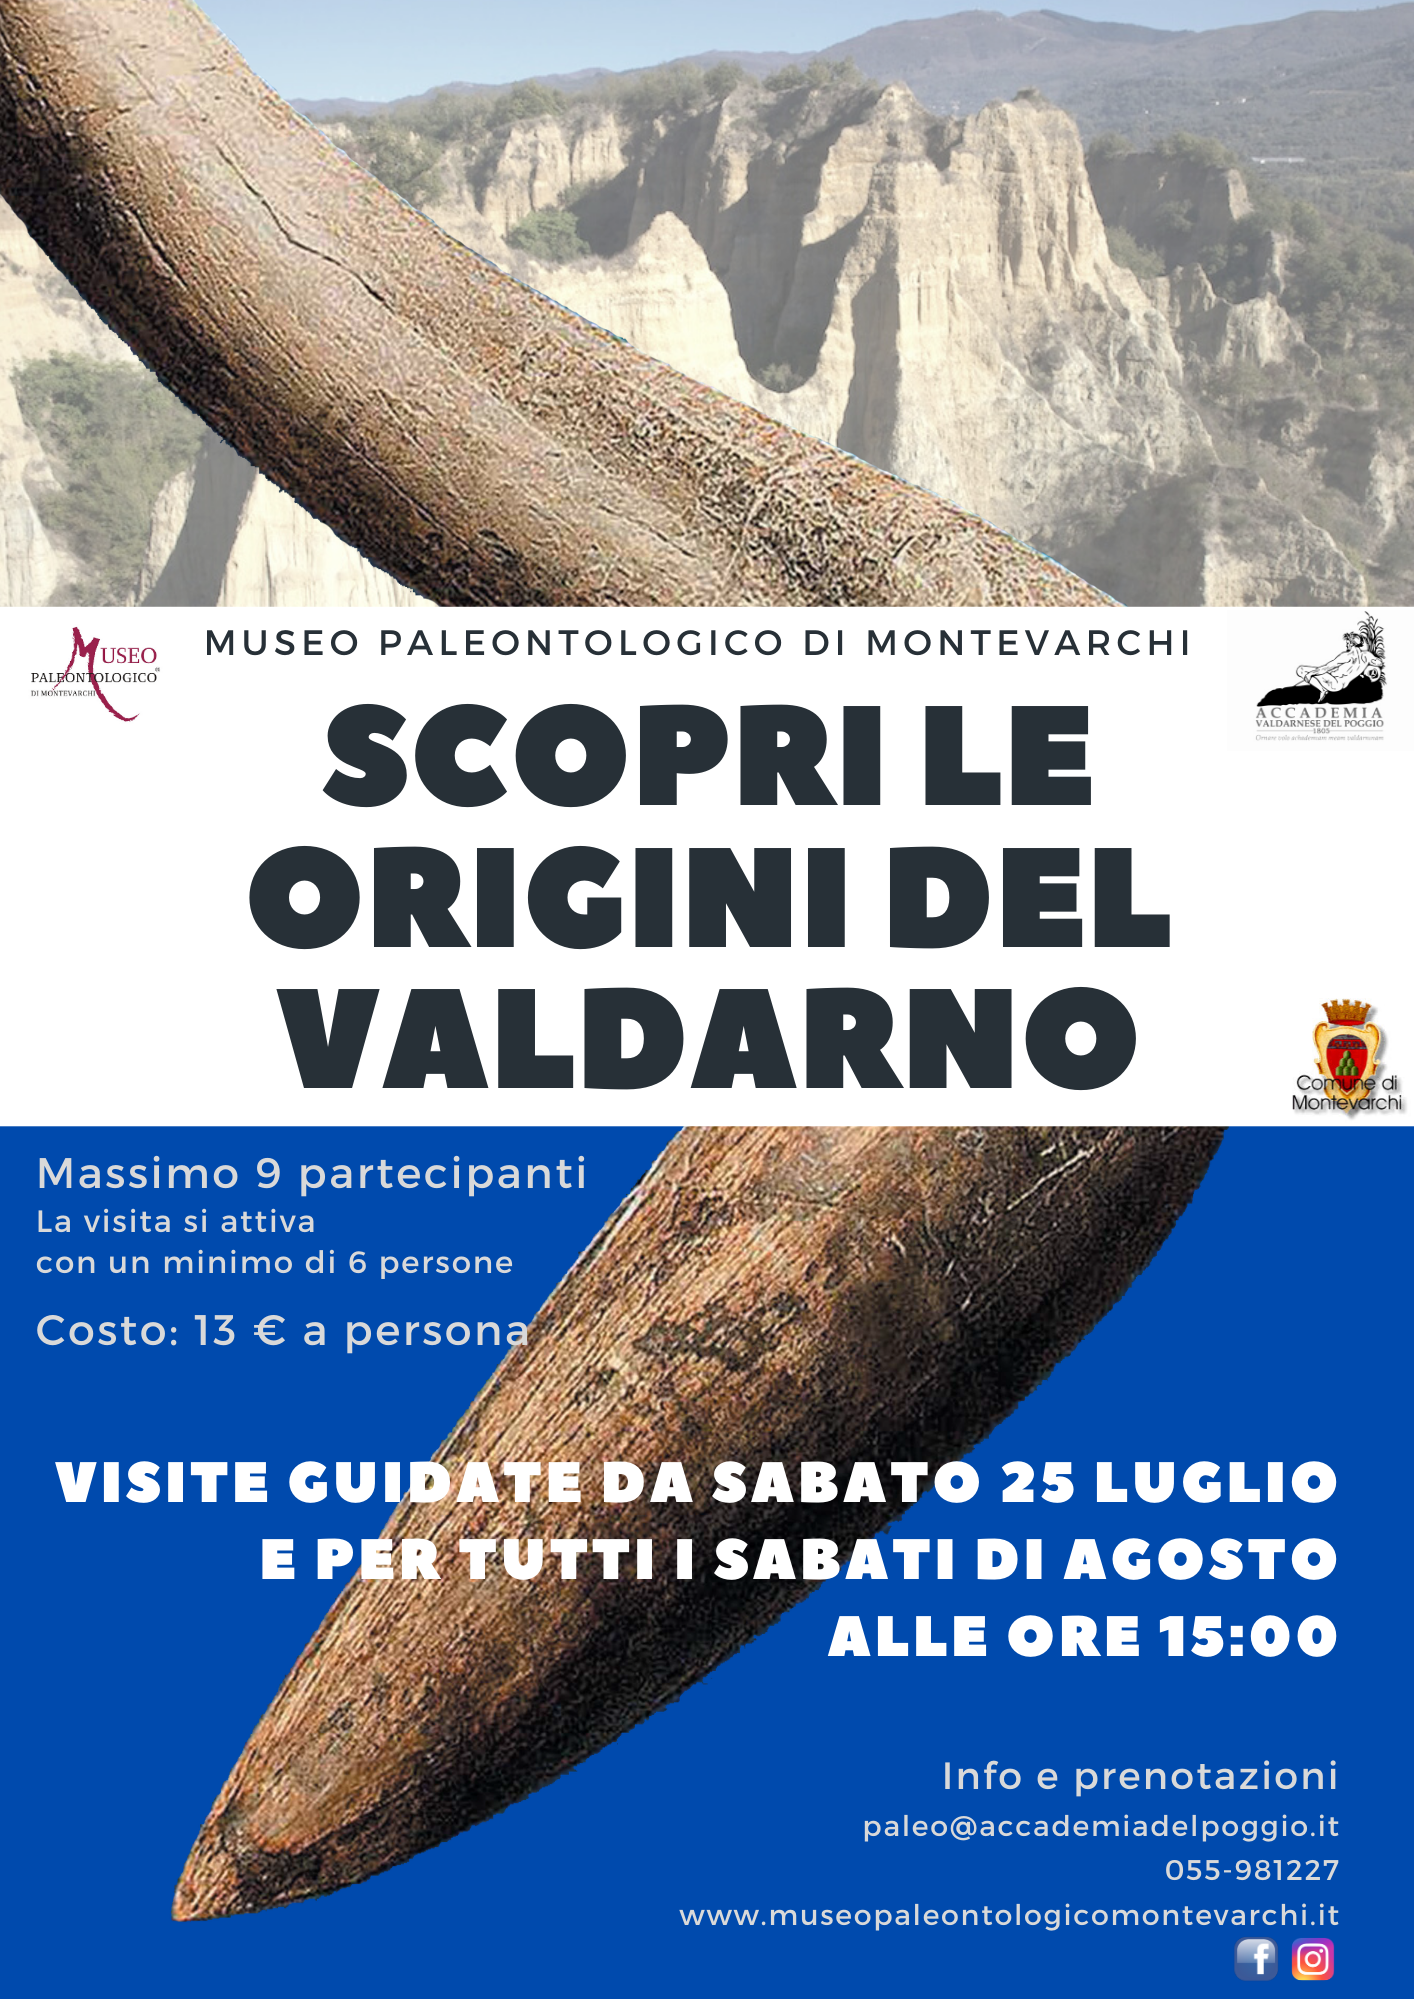 Museo Paleontologico di Montevarchi, “Scopri le origini del Valdarno” con le visite guidate